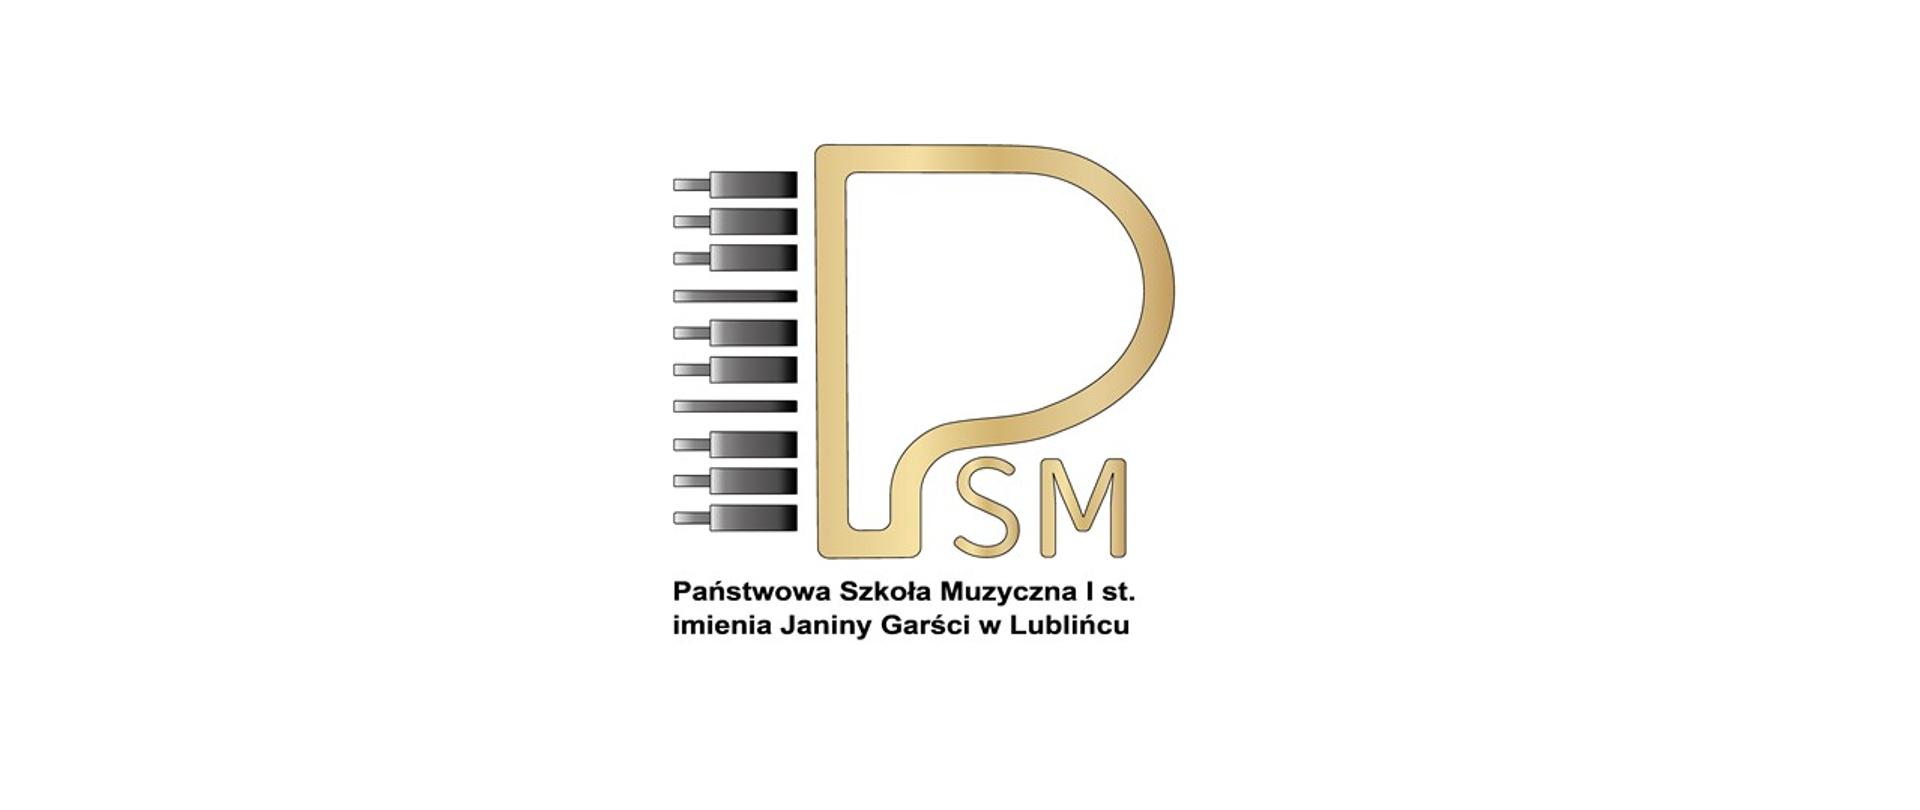 Logo Państwowej Szkoły Muzycznej I stopnia imienia Janiny Garści w Lublińcu, złote litery PSM, z lewej strony czarna klawiatura pianina, pod spodem czarny napis z nazwą szkoły.